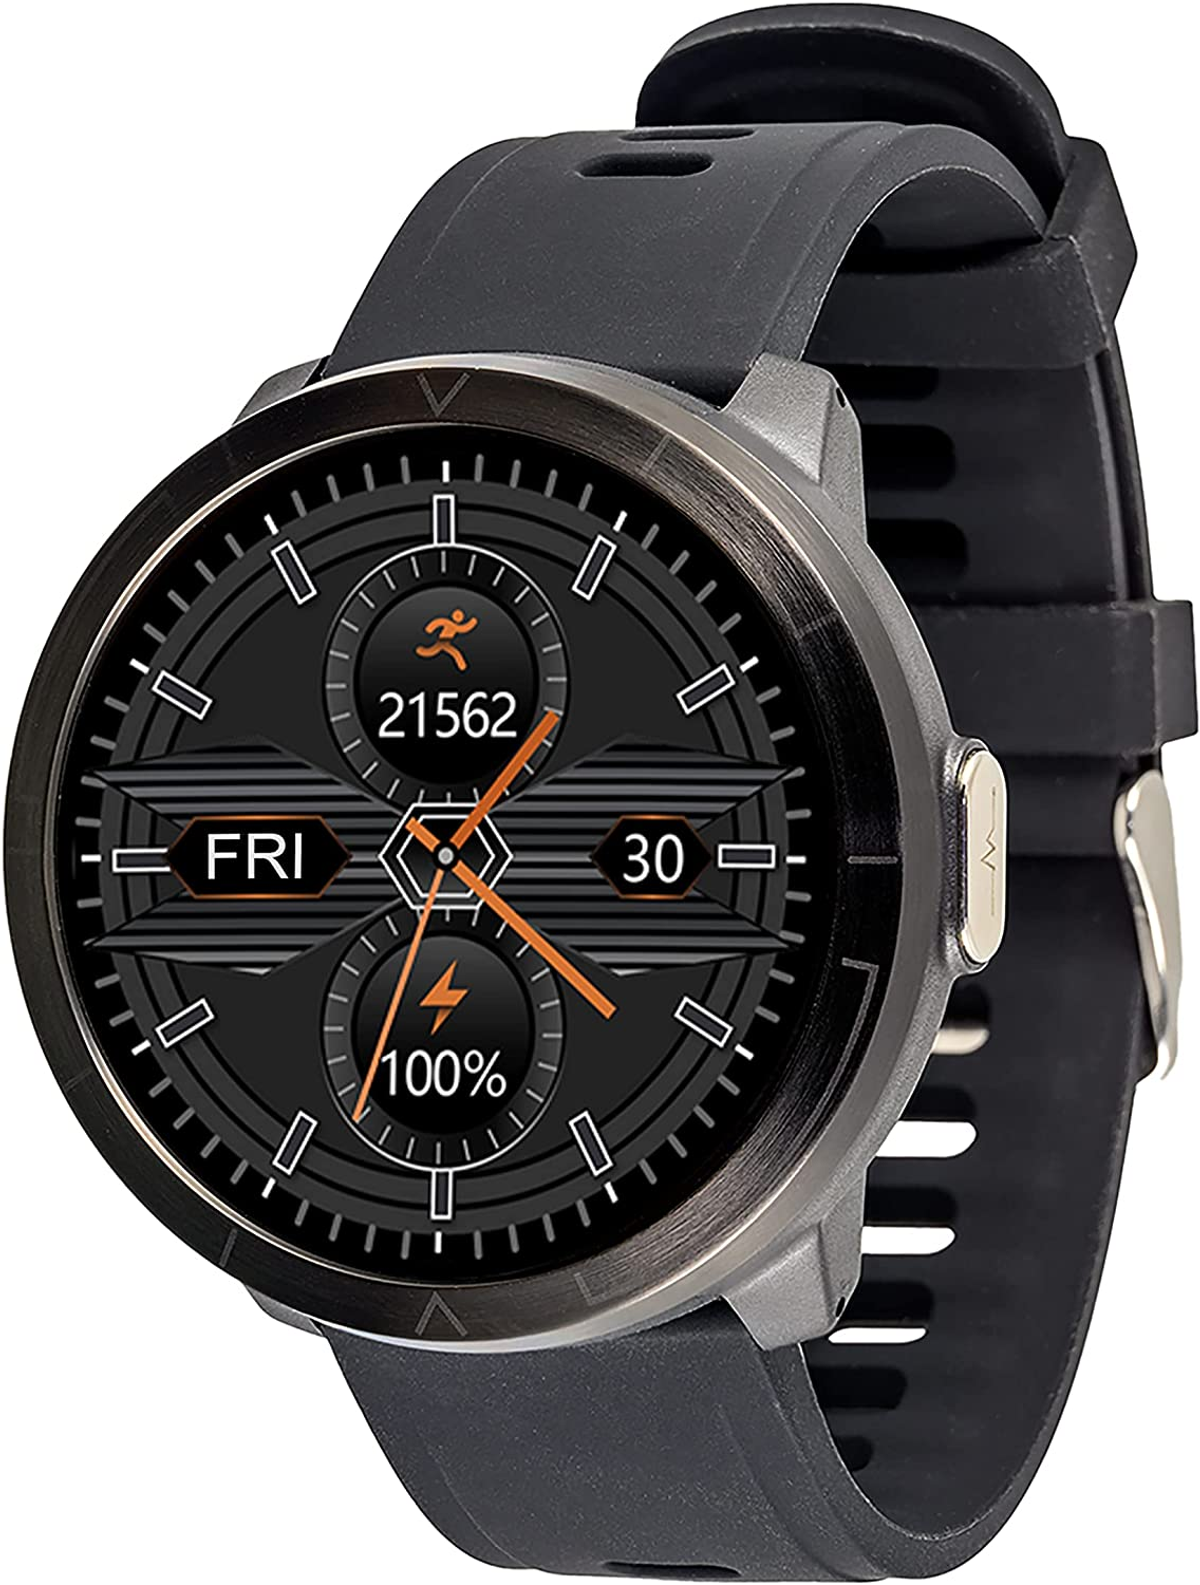 WATCHMARK WM18 schwarz Smartwatch Kunststoff Schwarz Silizium